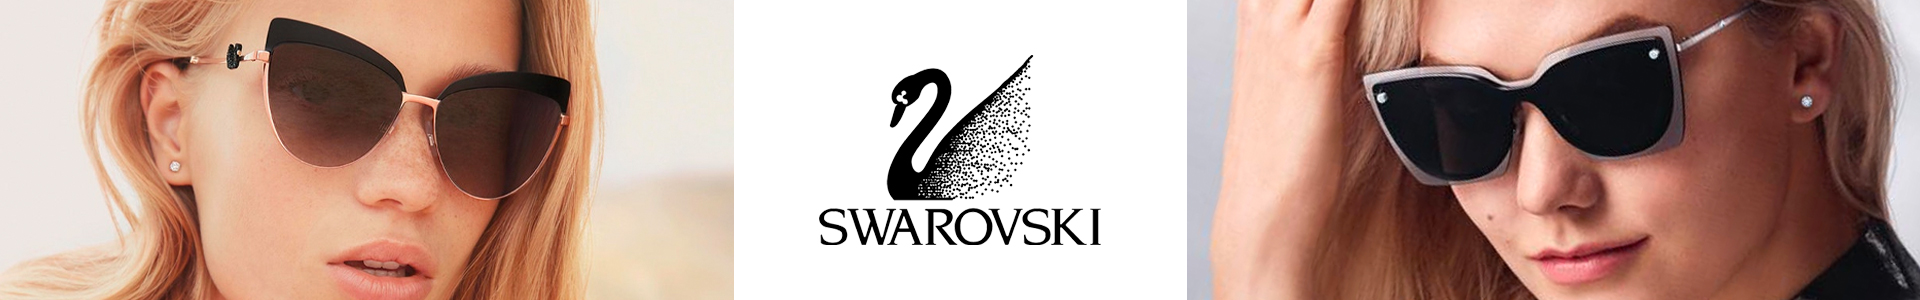 swarovski.jpg (252 KB)